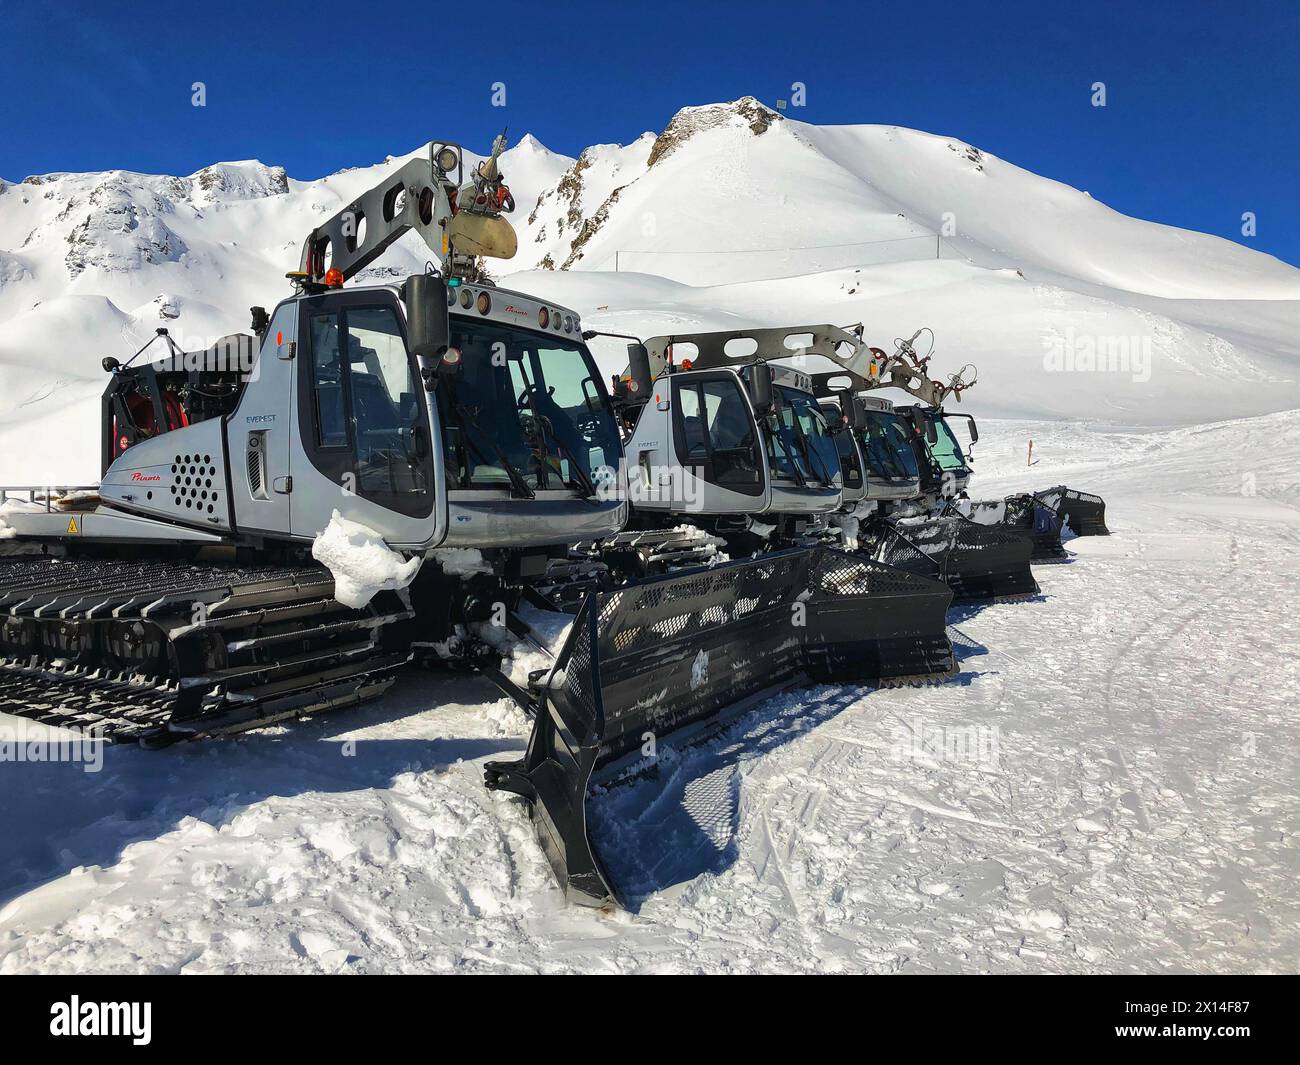 Bad Gastein, Austria - April 2,2018: Snow rollers in the ski resort.Bad Hofgastein, Austria. Stock Photo